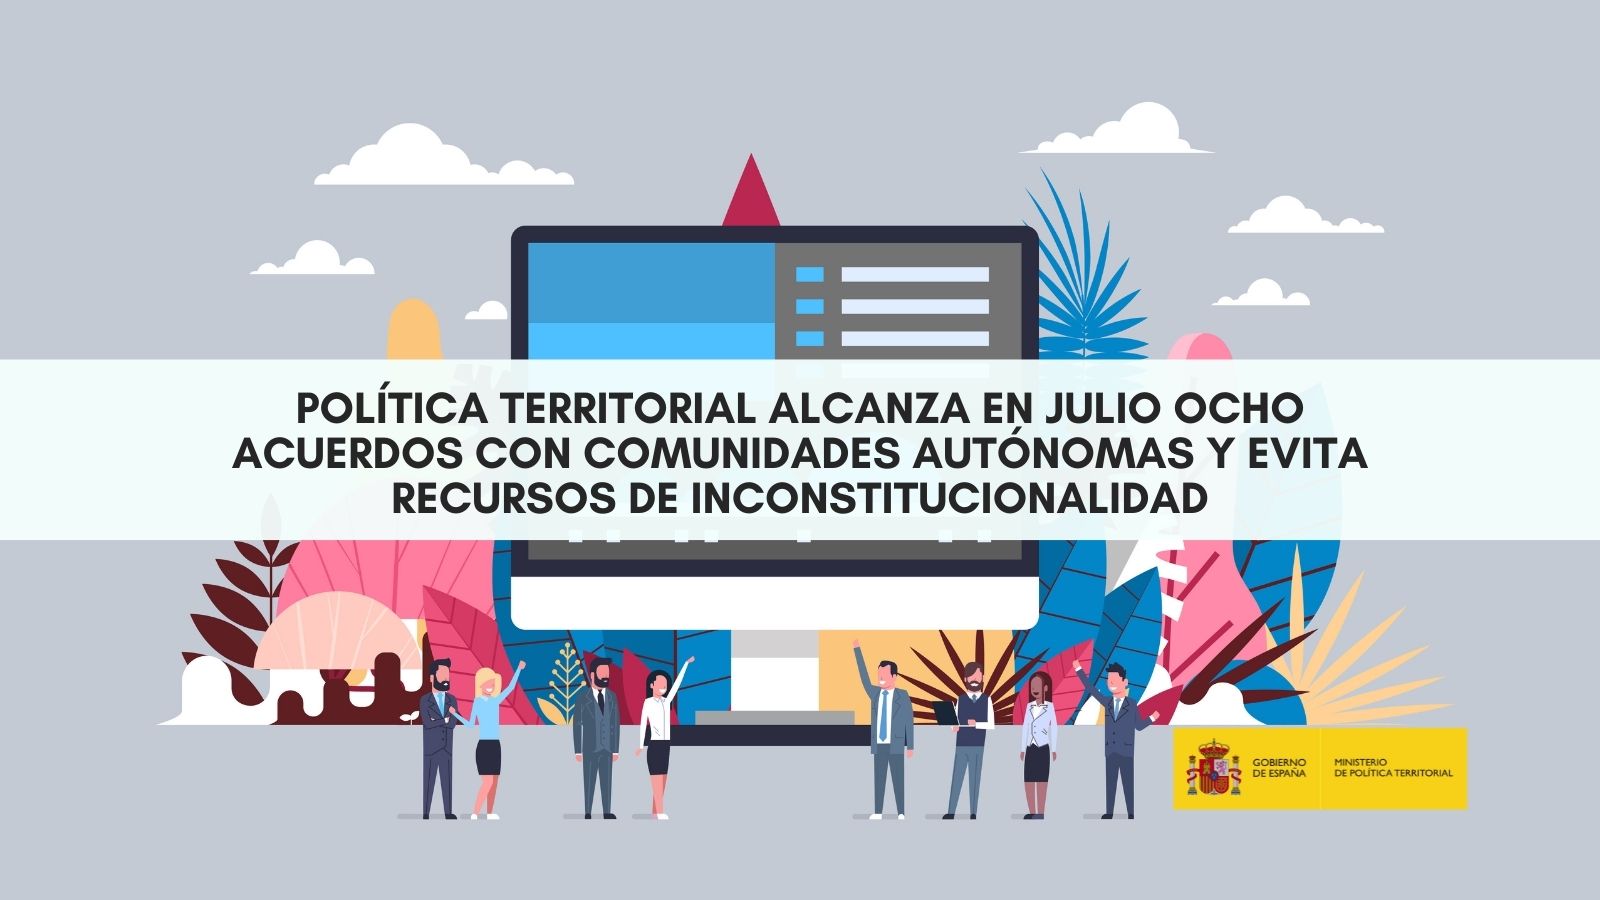 Política Territorial alcanza en julio ocho acuerdos con comunidades autónomas y evita recursos de inconstitucionalidad